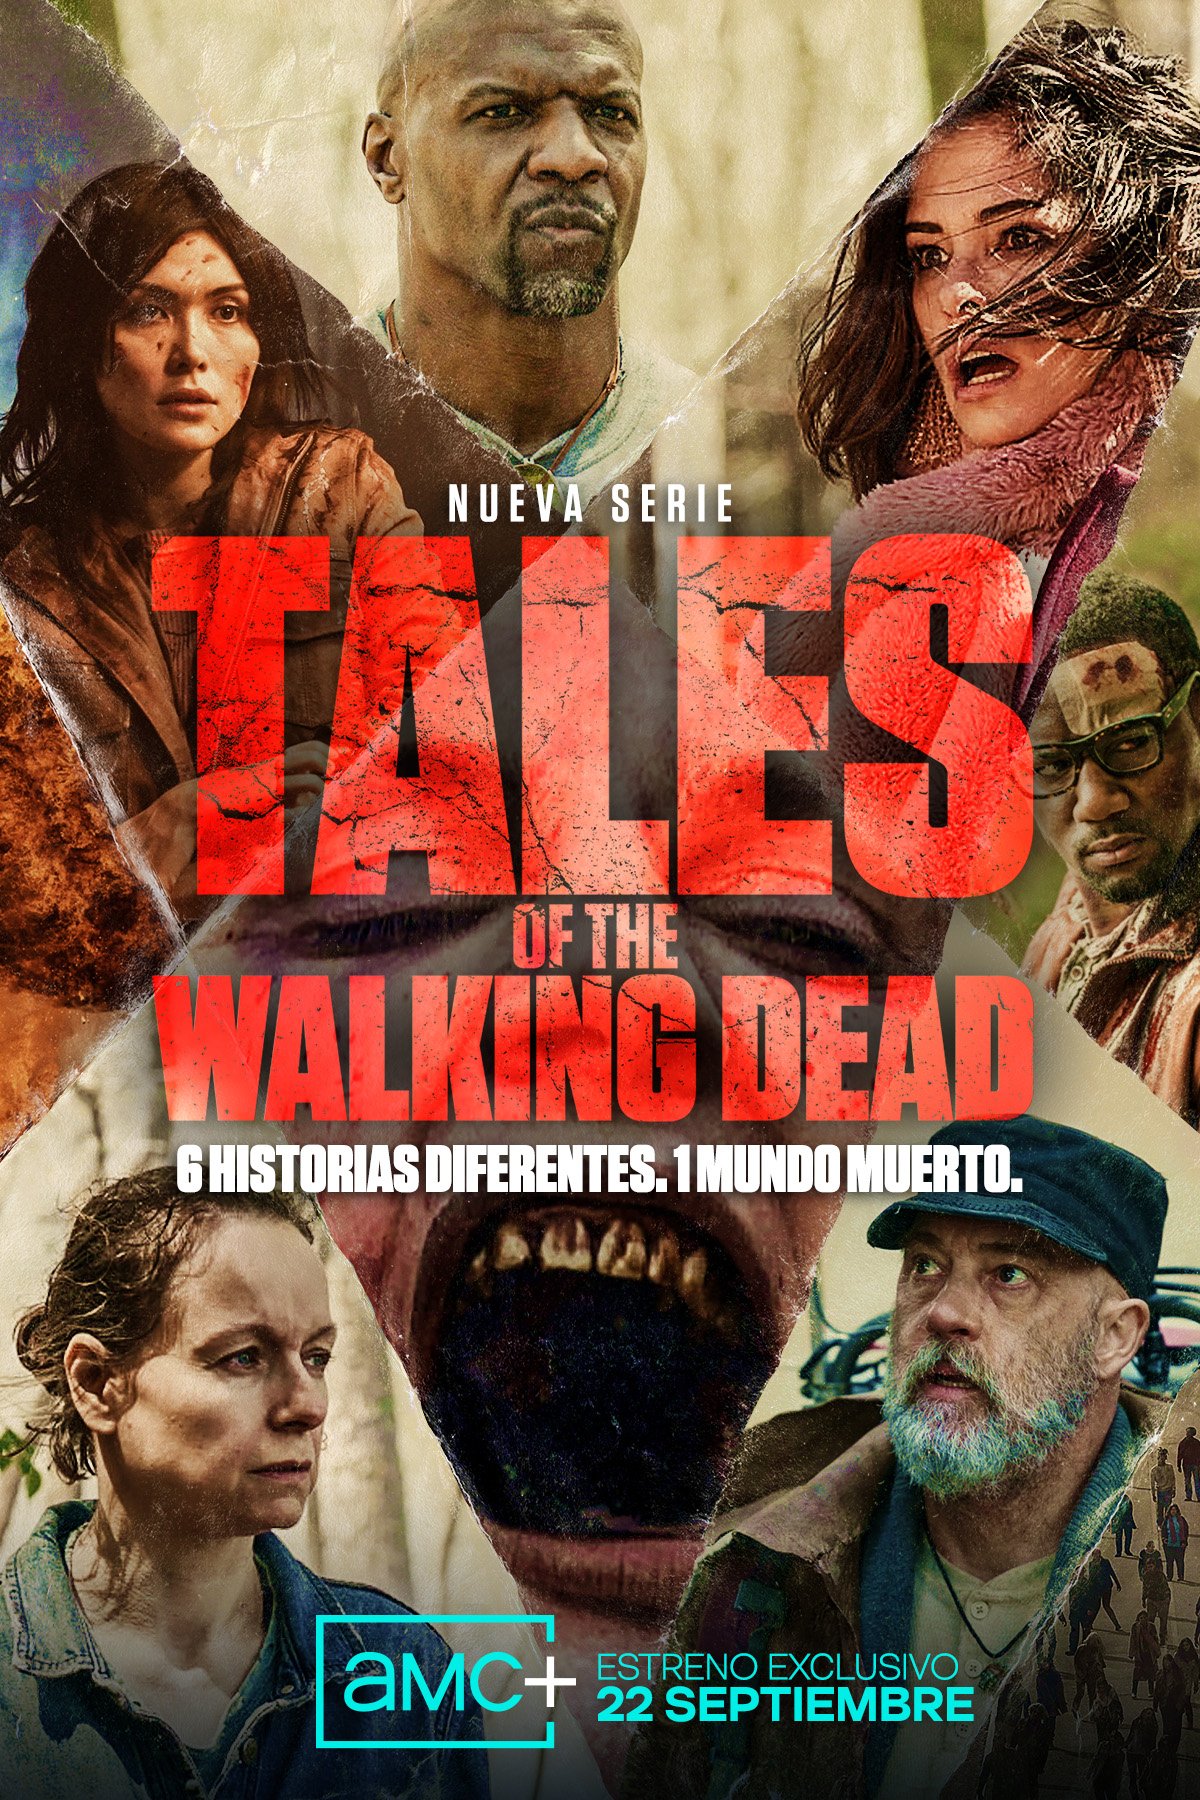 Tales of The Walking Dead